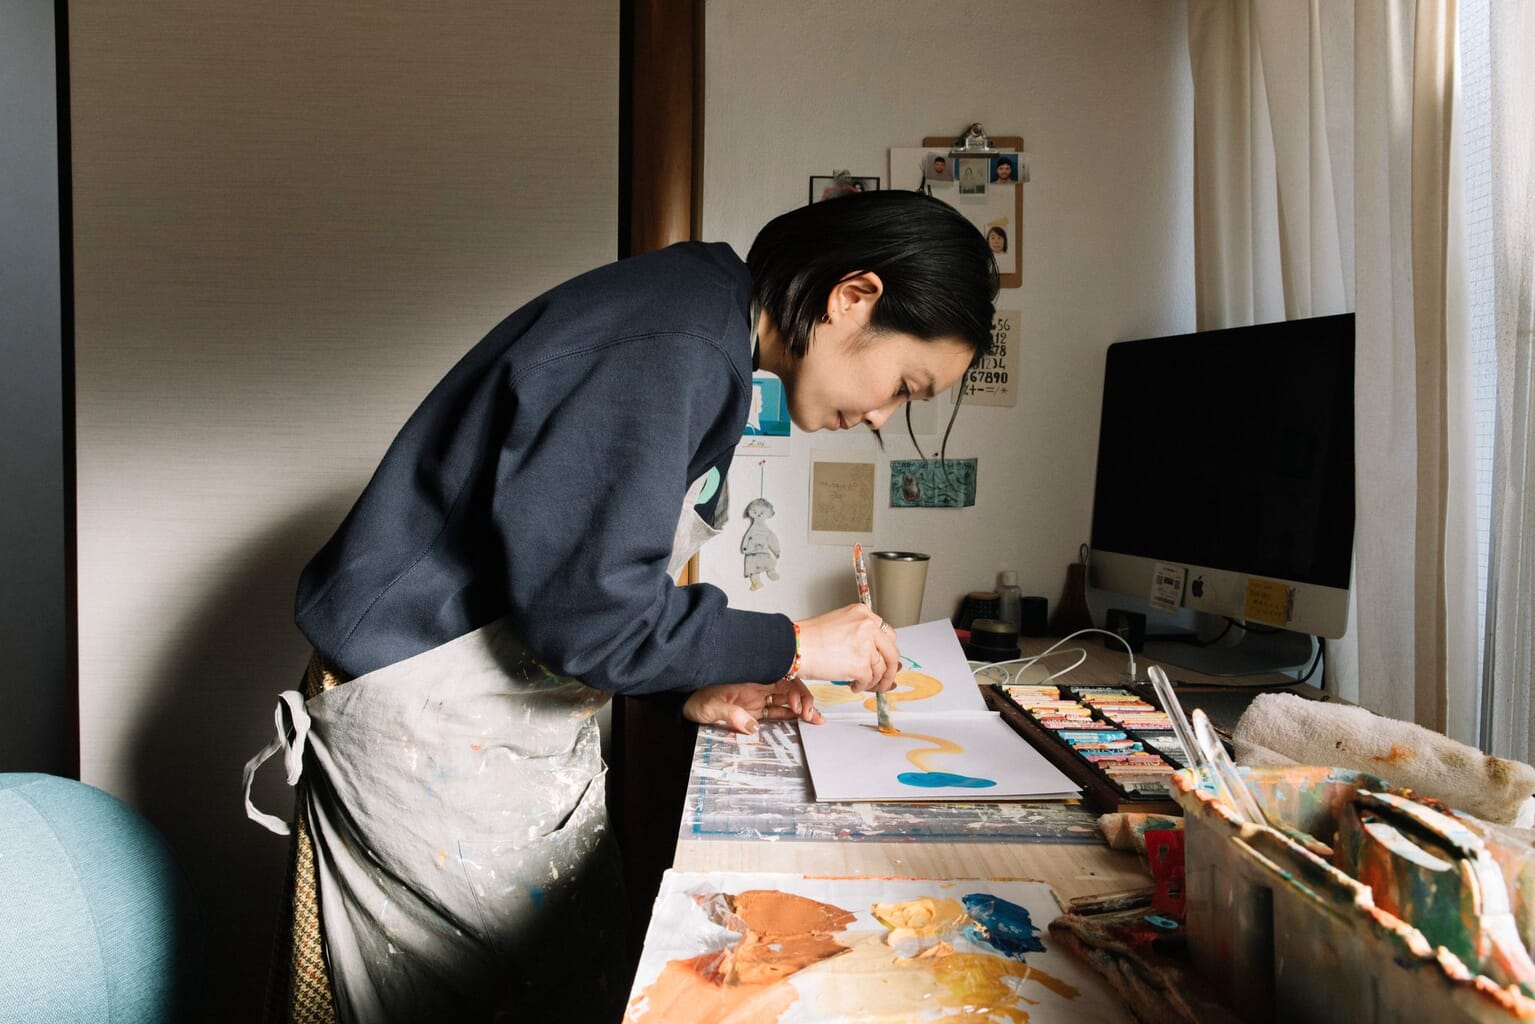 10 Questions With Artist Mayumi Yamase